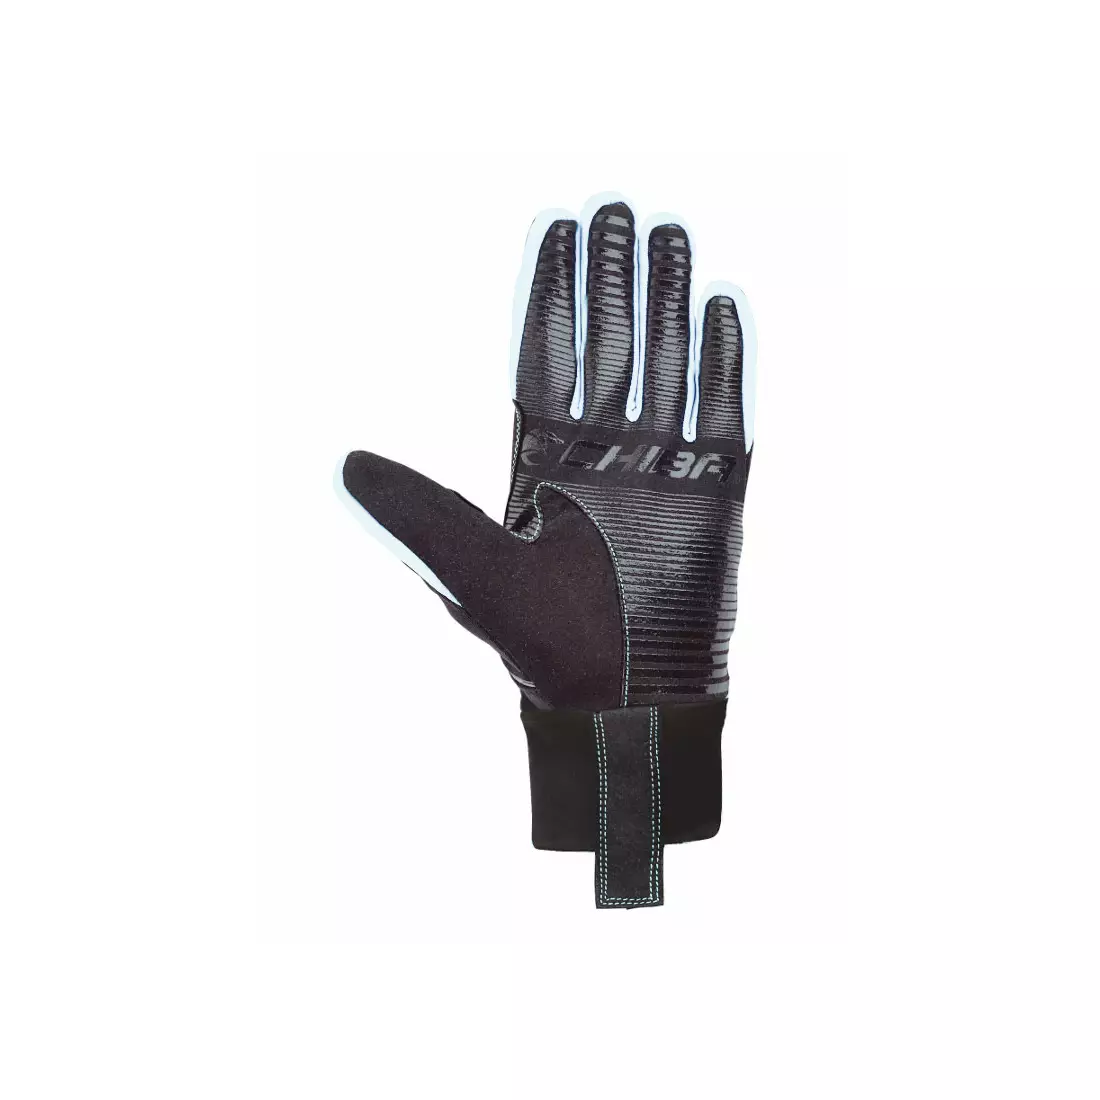 CHIBA CROSS WINDSTOPPER - winter gloves, black-white 31517